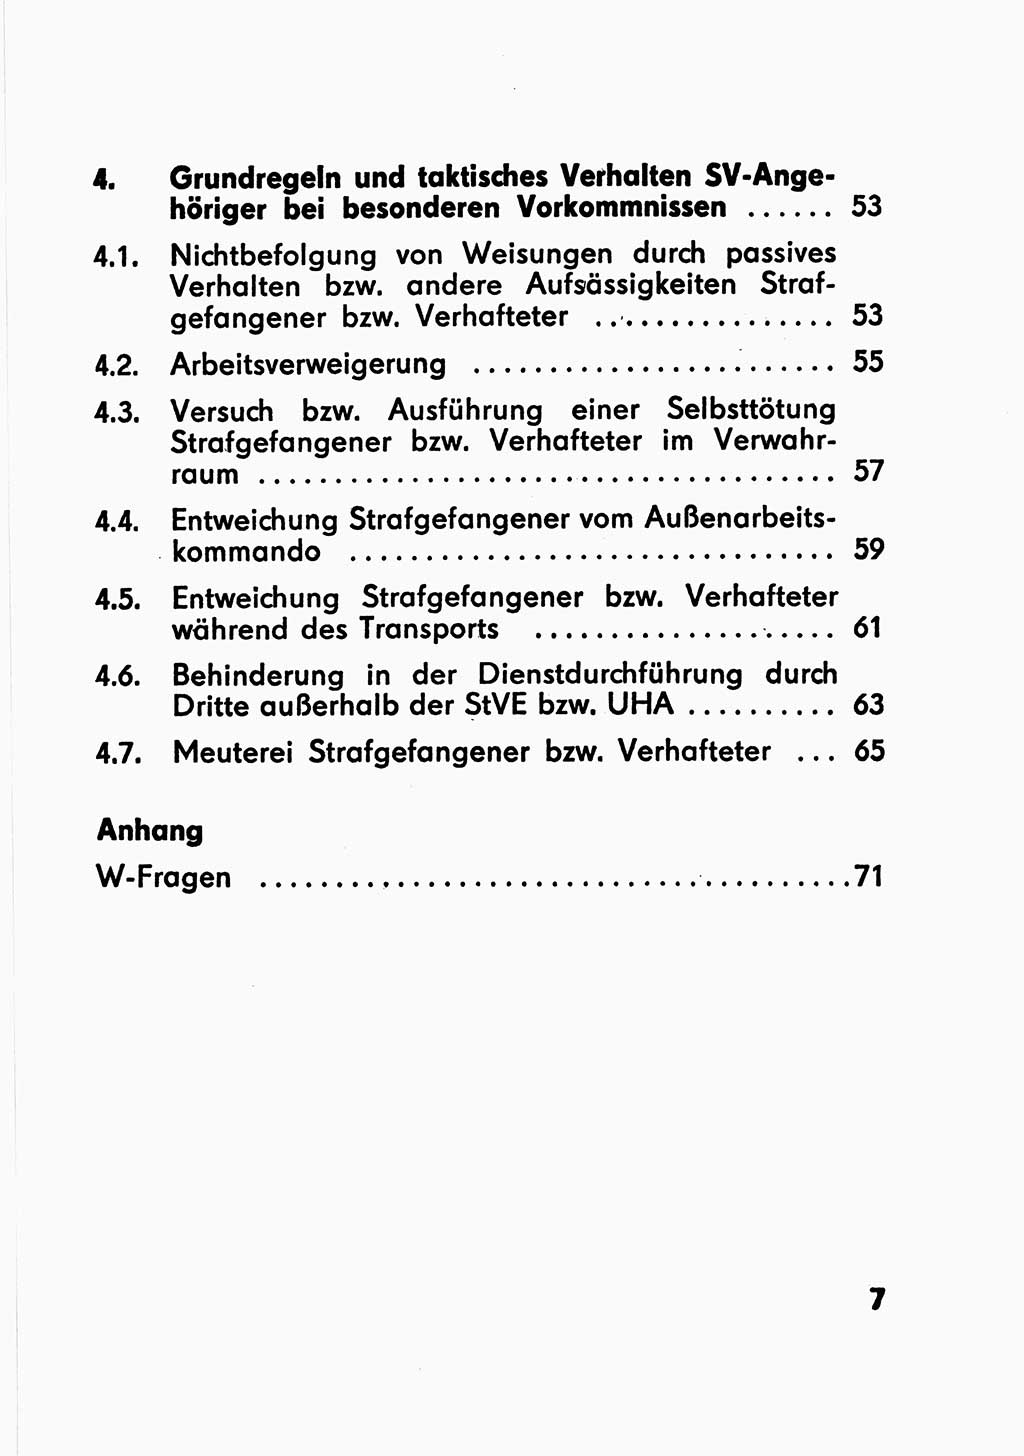 Merkbuch für SV-Angehörige [Strafvollzug (SV) Deutsche Demokratische Republik (DDR)] 1975, Seite 7 (SV-Angeh. DDR 1975, S. 7)